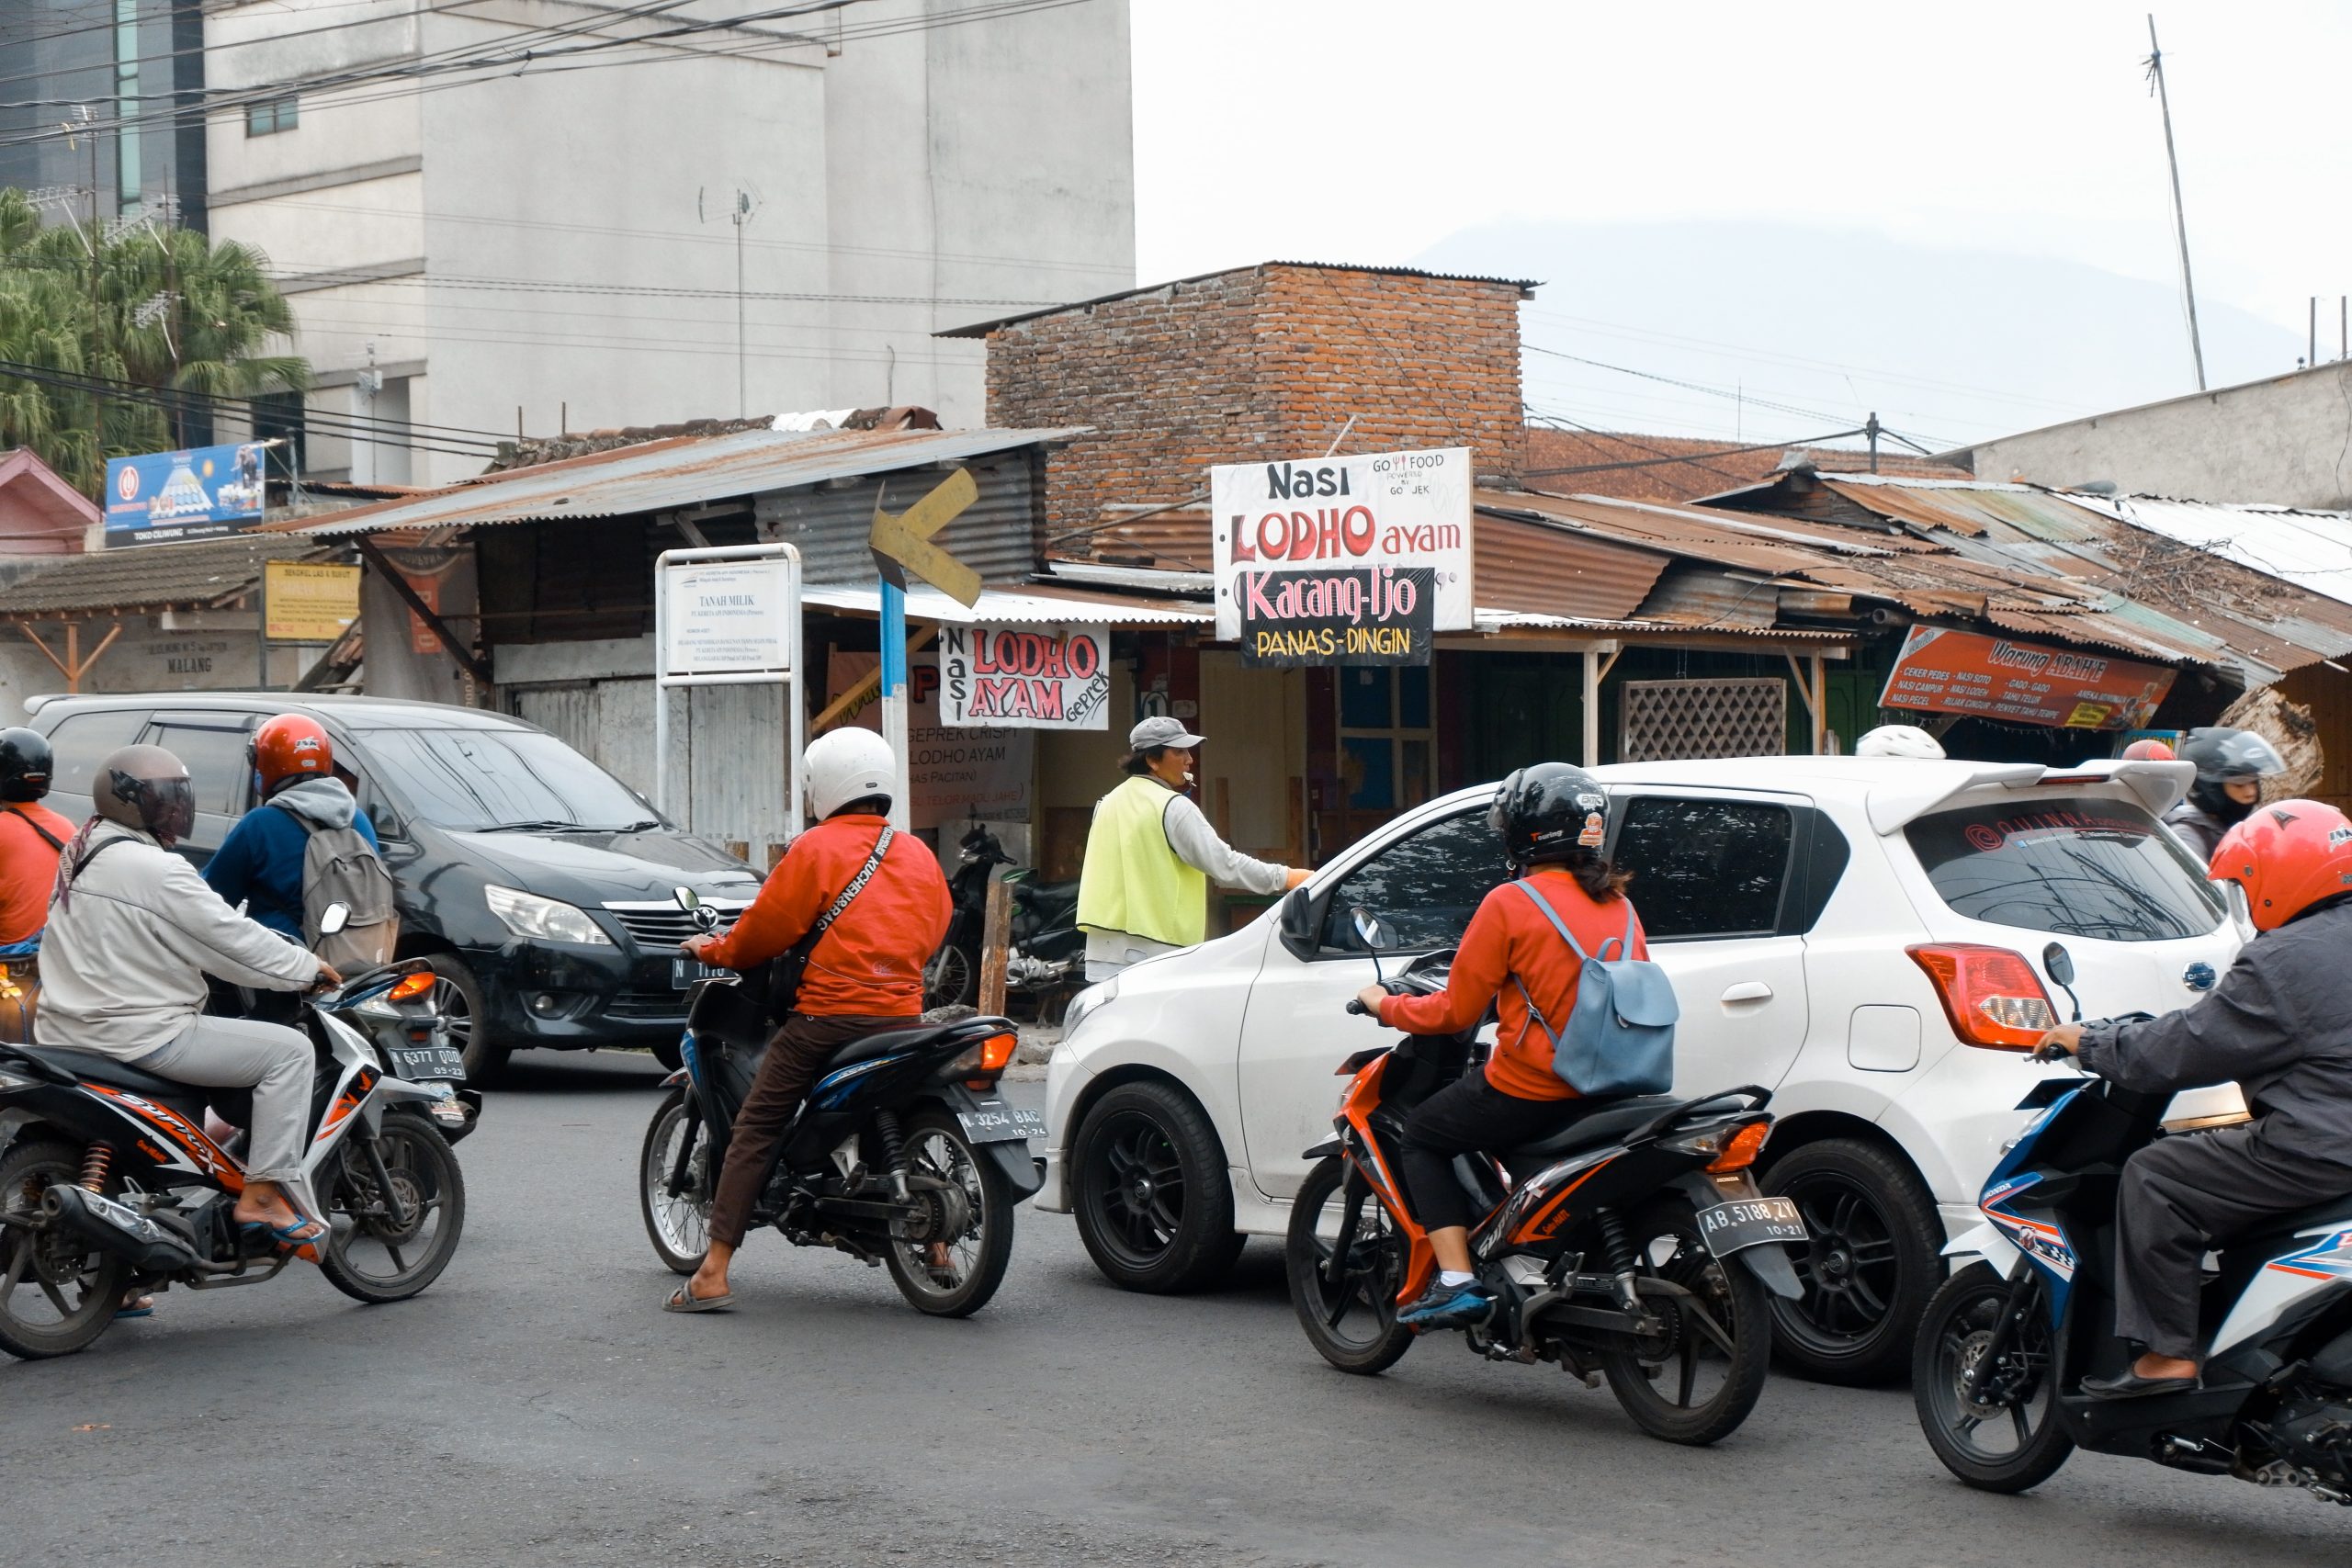 Mengapa volume pengendara sepeda motor di Indonesia lebih banyak daripada di negara lain?